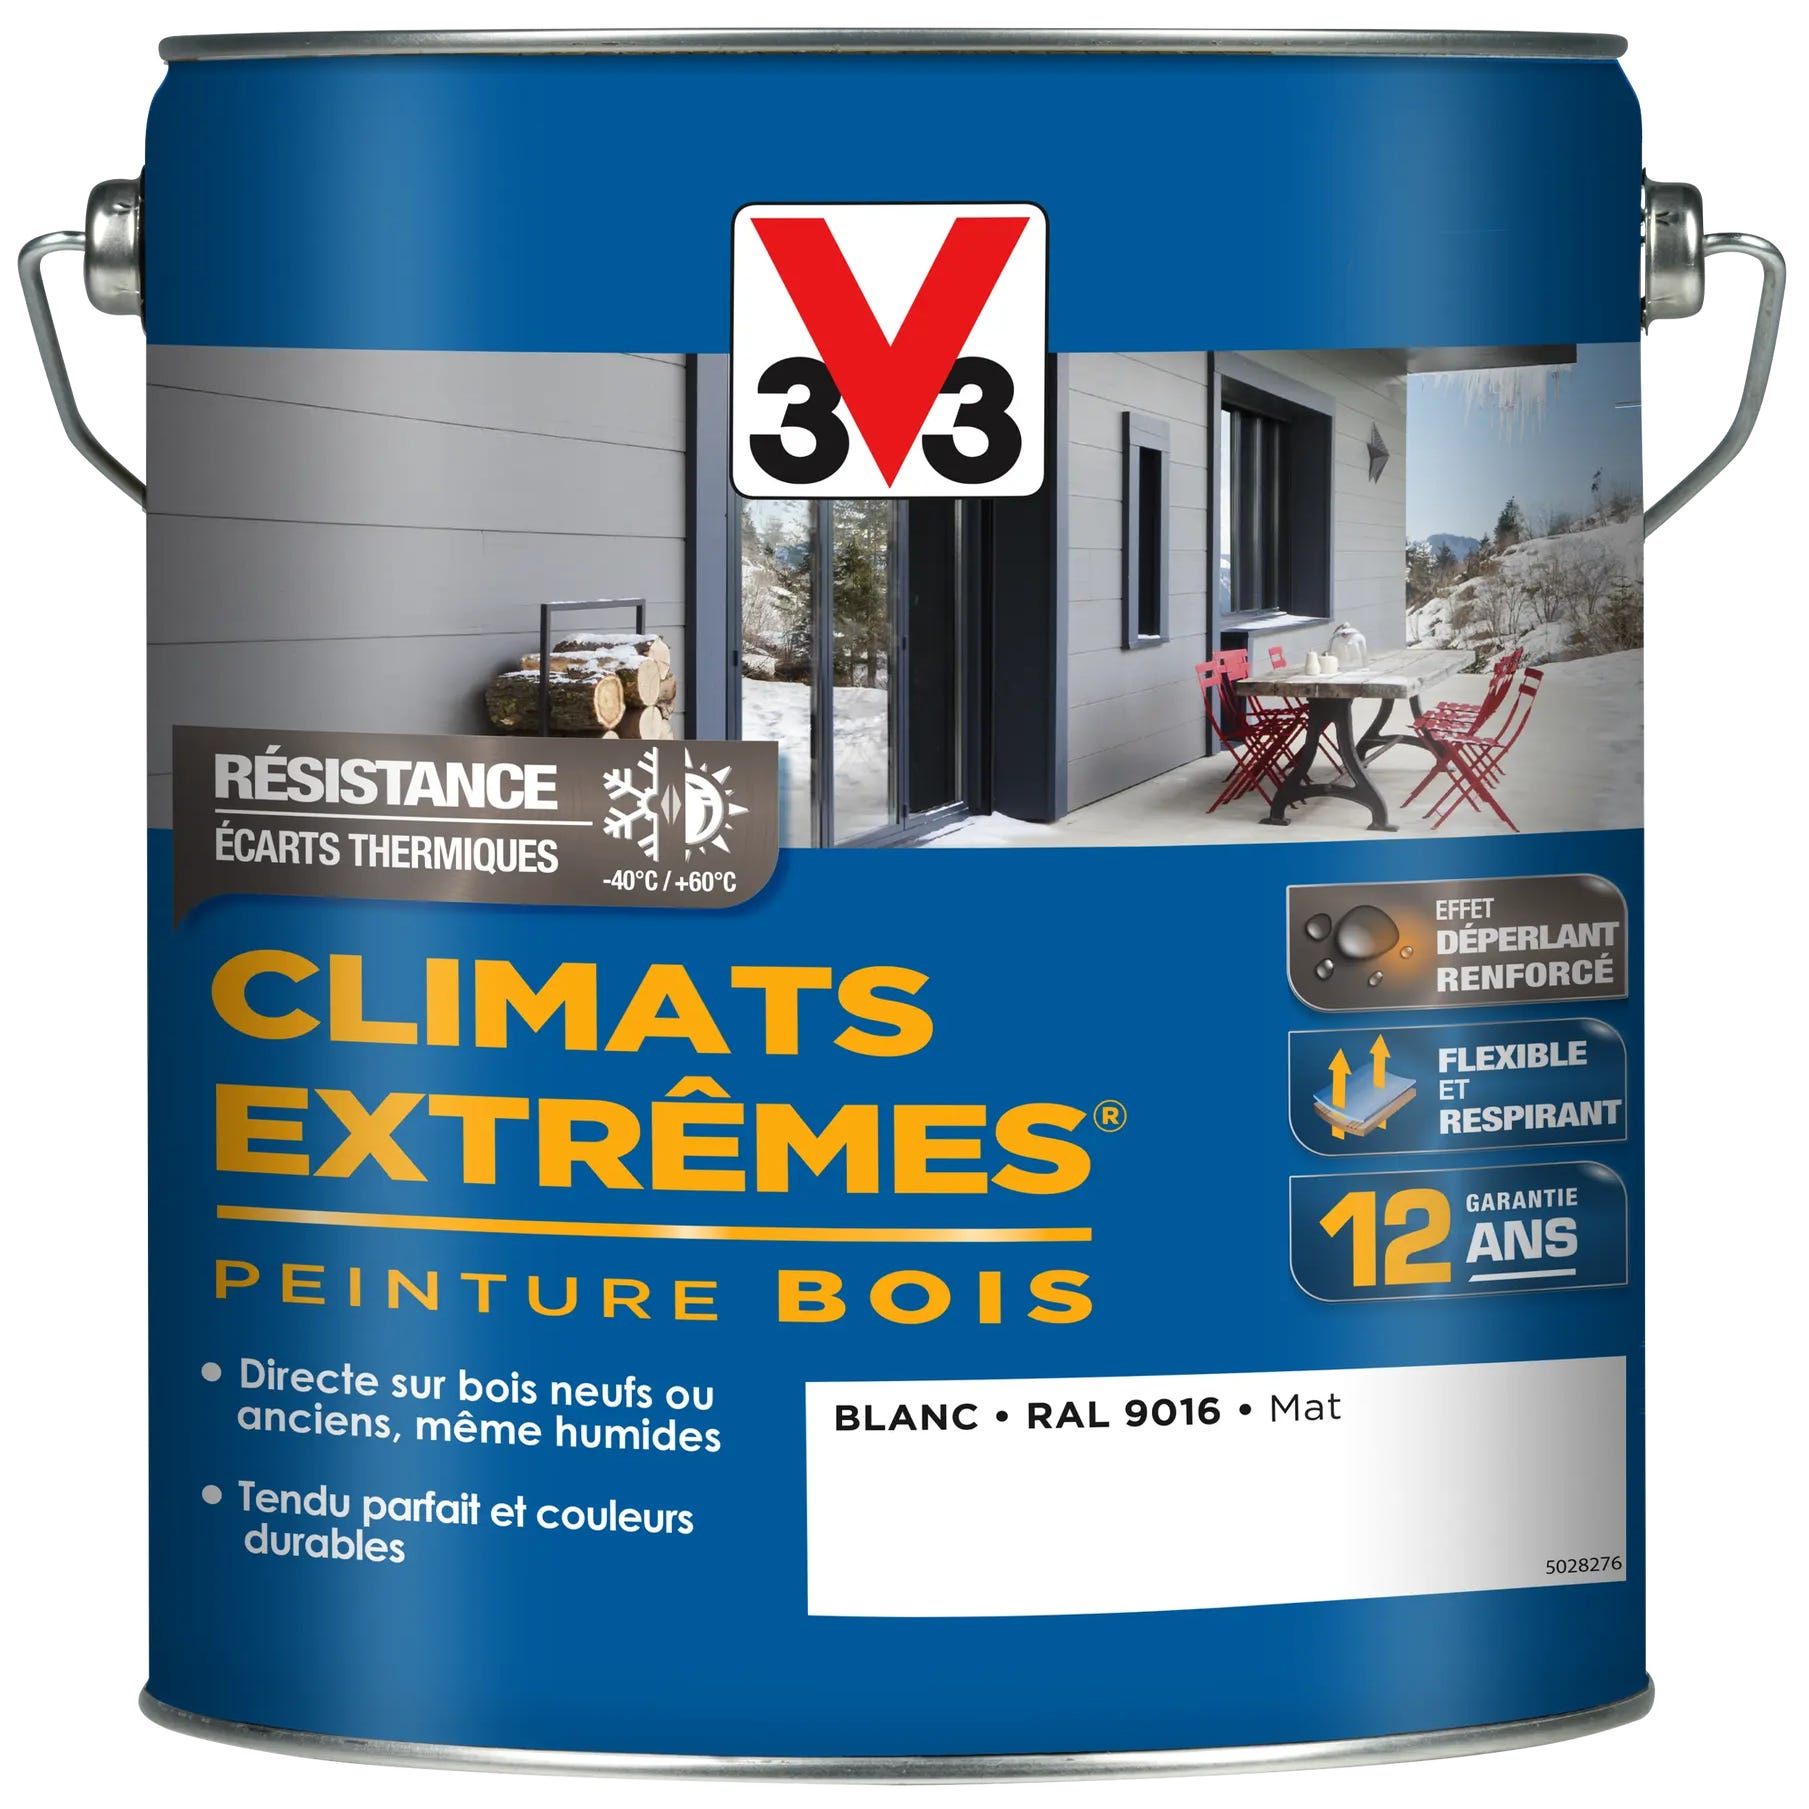 Peinture bois extérieur Climats extrêmes® V33, blanc mat 5 l